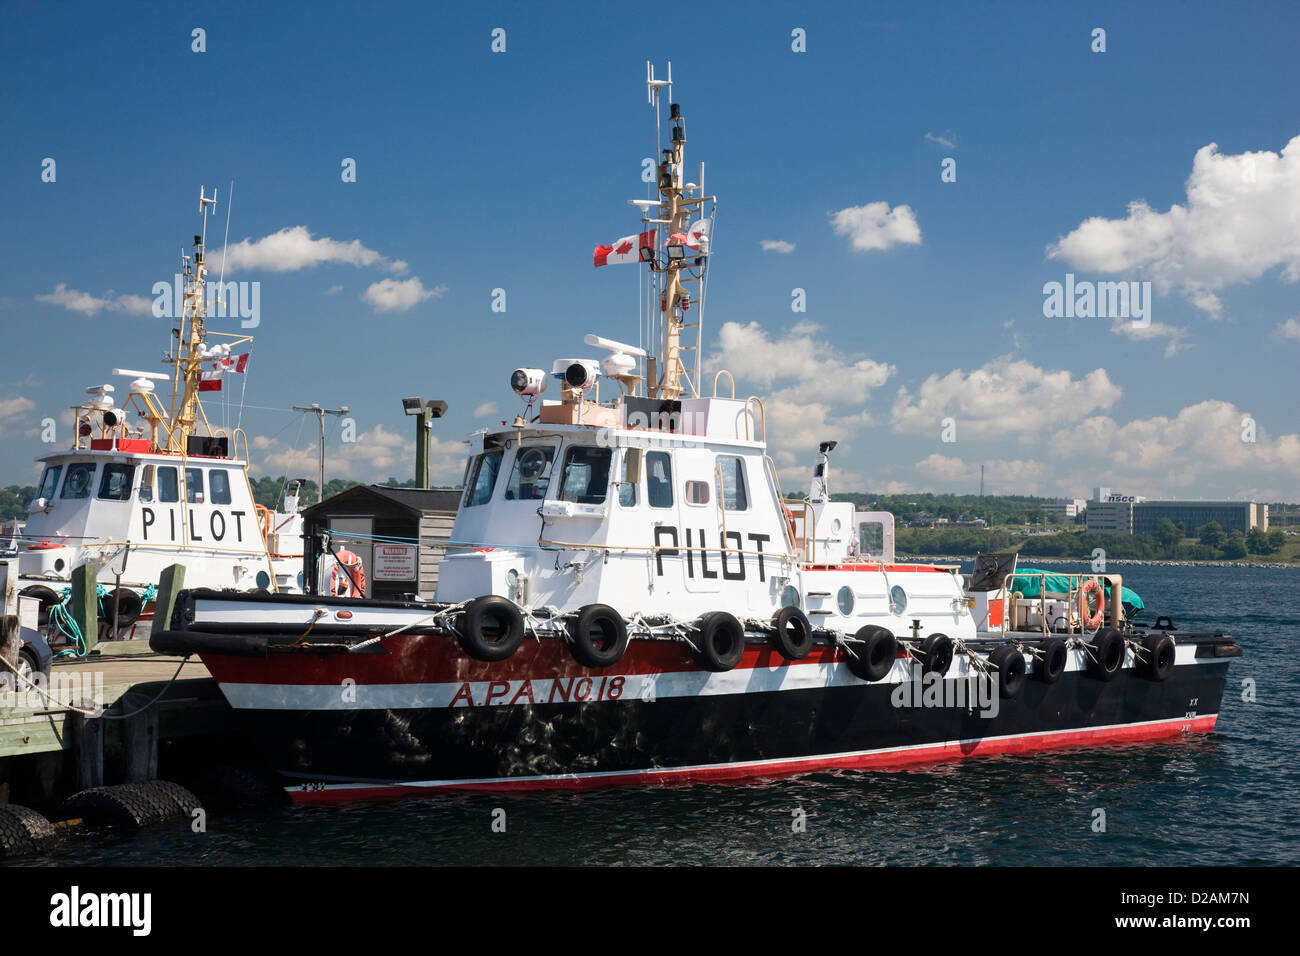 Les remorqueurs pilotes amarrés dans le port de Halifax, Nouvelle-Écosse, Canada Banque D'Images